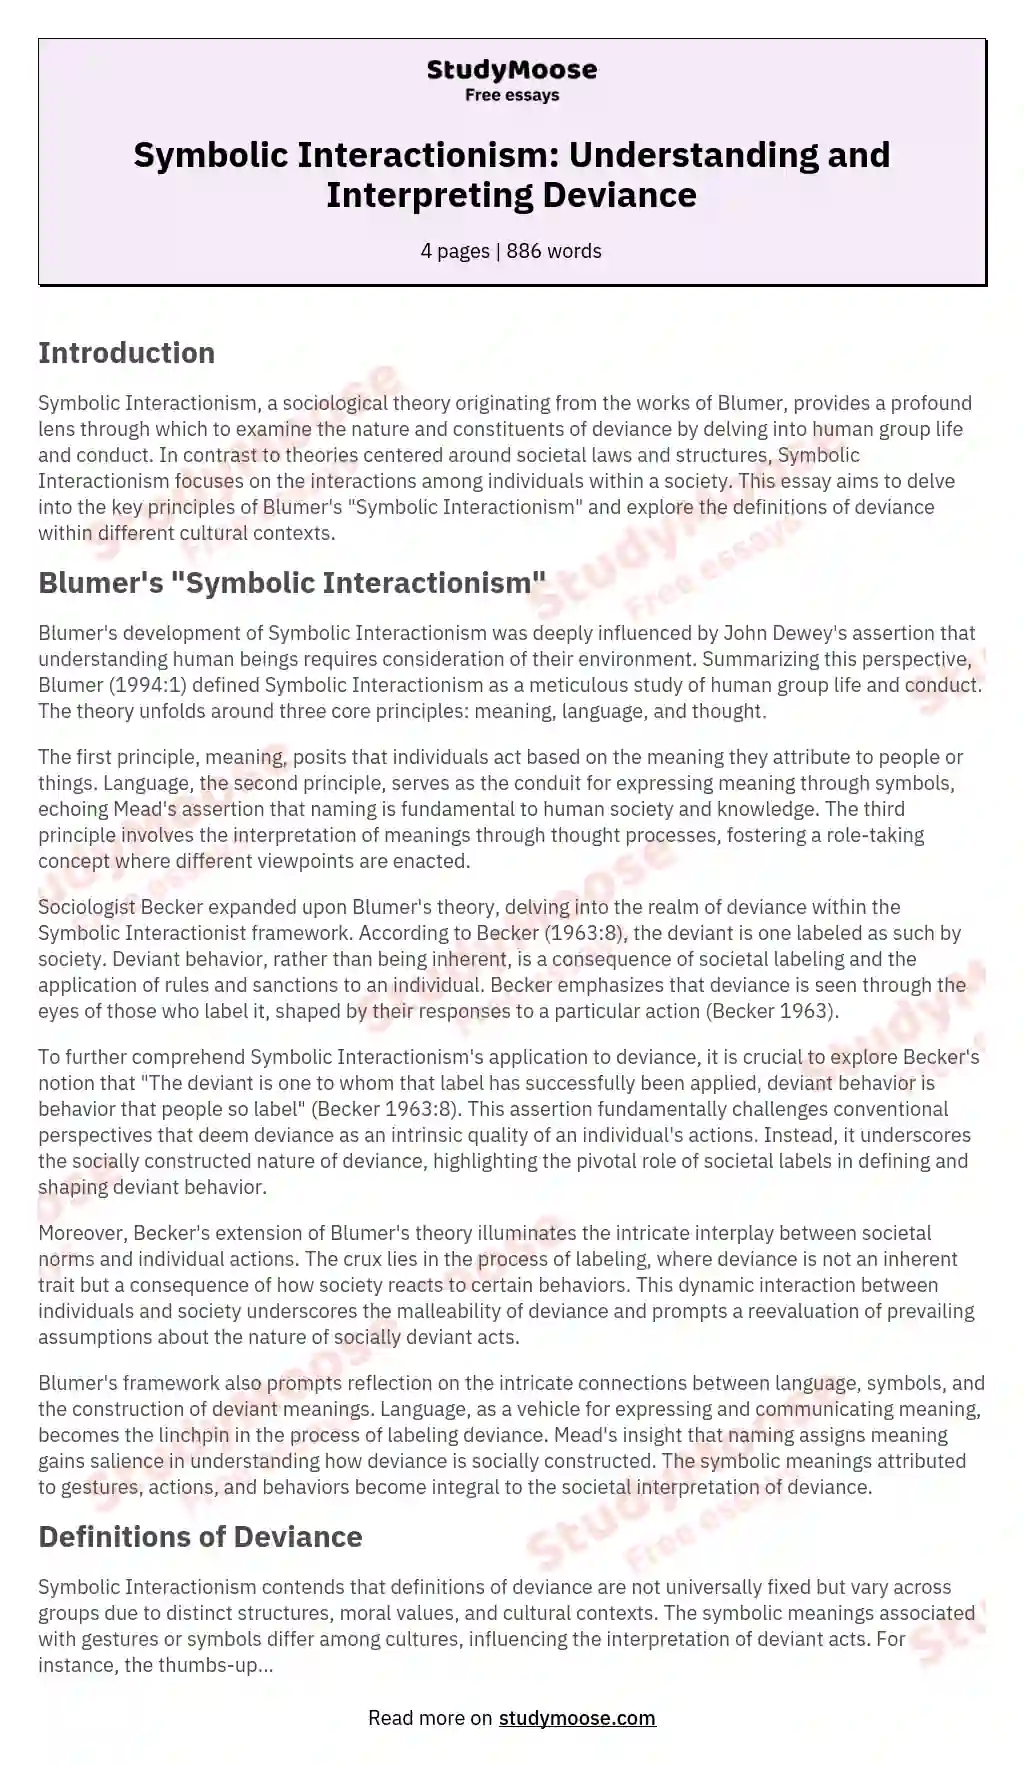 Symbolic Interactionism: Understanding and Interpreting Deviance essay